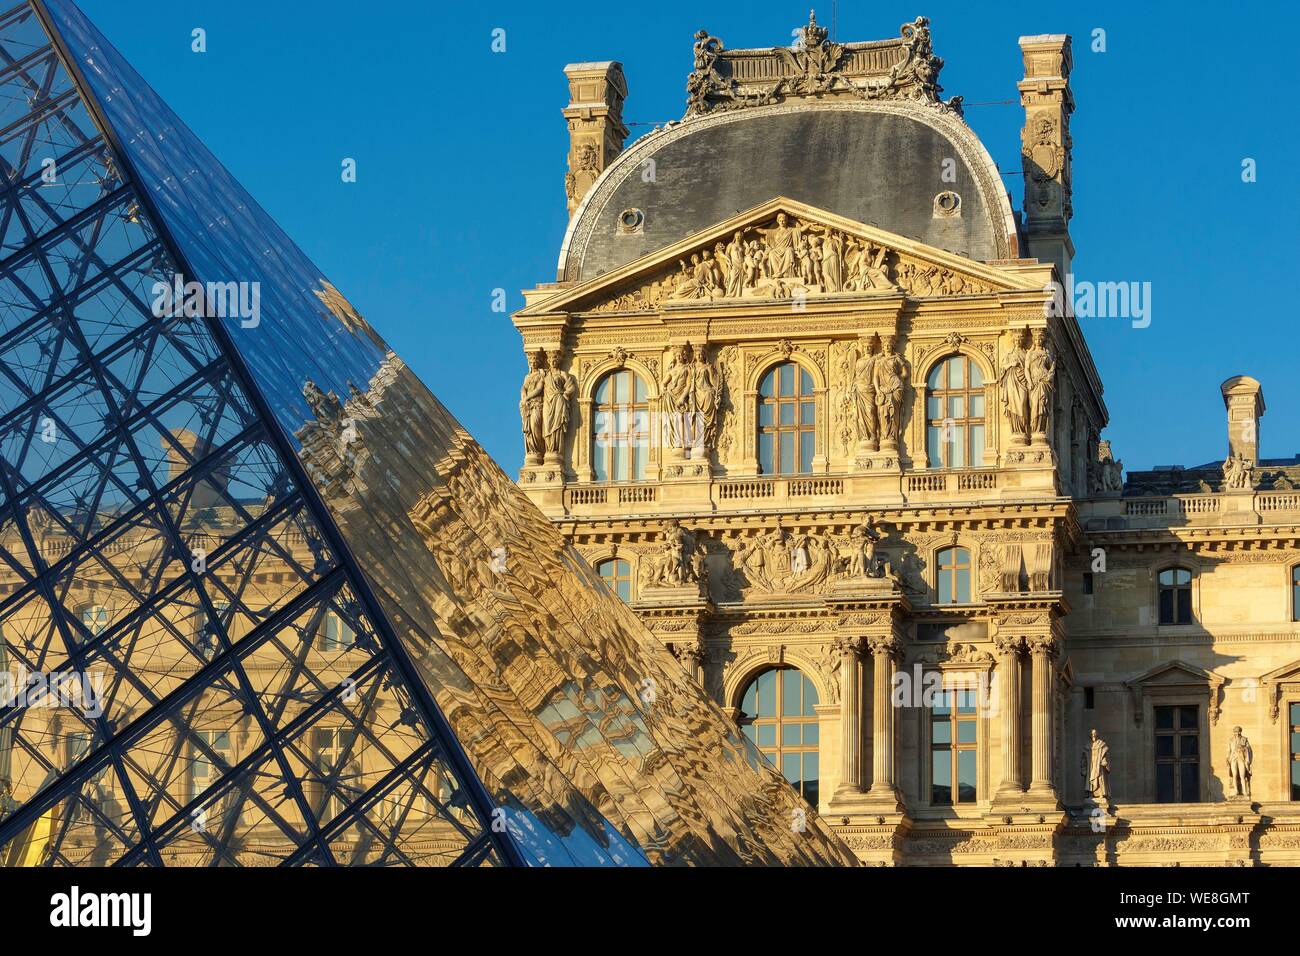 Francia, Paris, área catalogado como Patrimonio de la Humanidad por la UNESCO, la reflexión de la fachada del ala Richelieu en la pirámide del Louvre por el arquitecto Ieoh Ming Pei en el Cour Napoleón Foto de stock